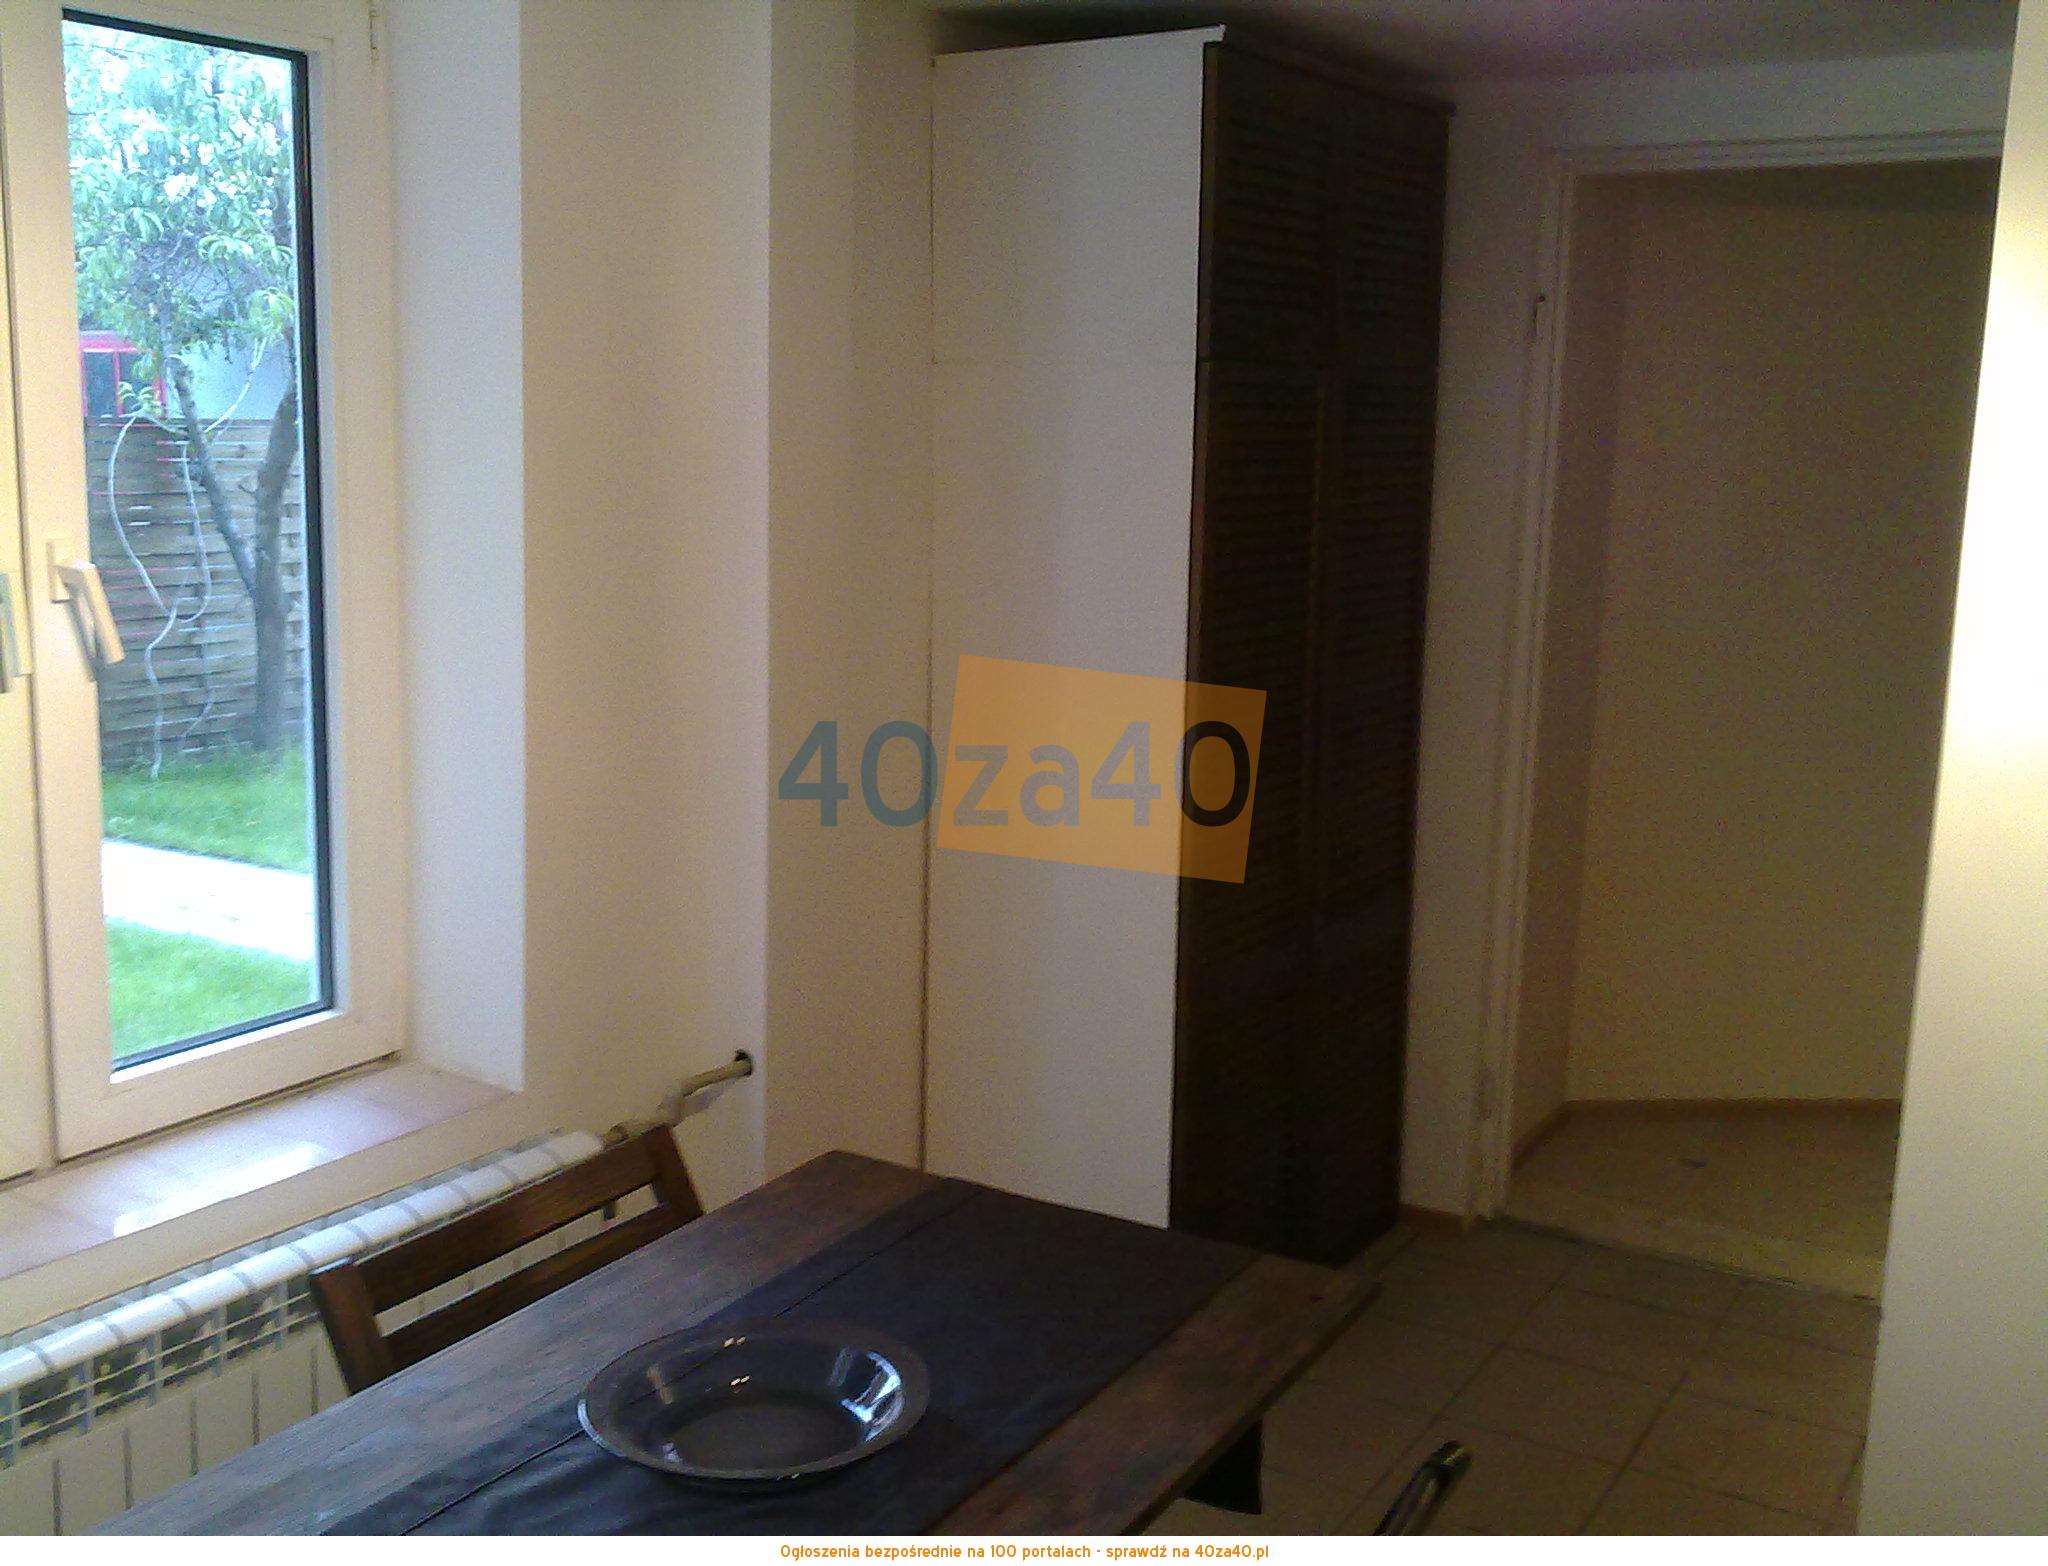 Mieszkanie do wynajęcia, pokoje: 1, cena: 900,00 PLN, Łódź, kontakt: 508-188-279